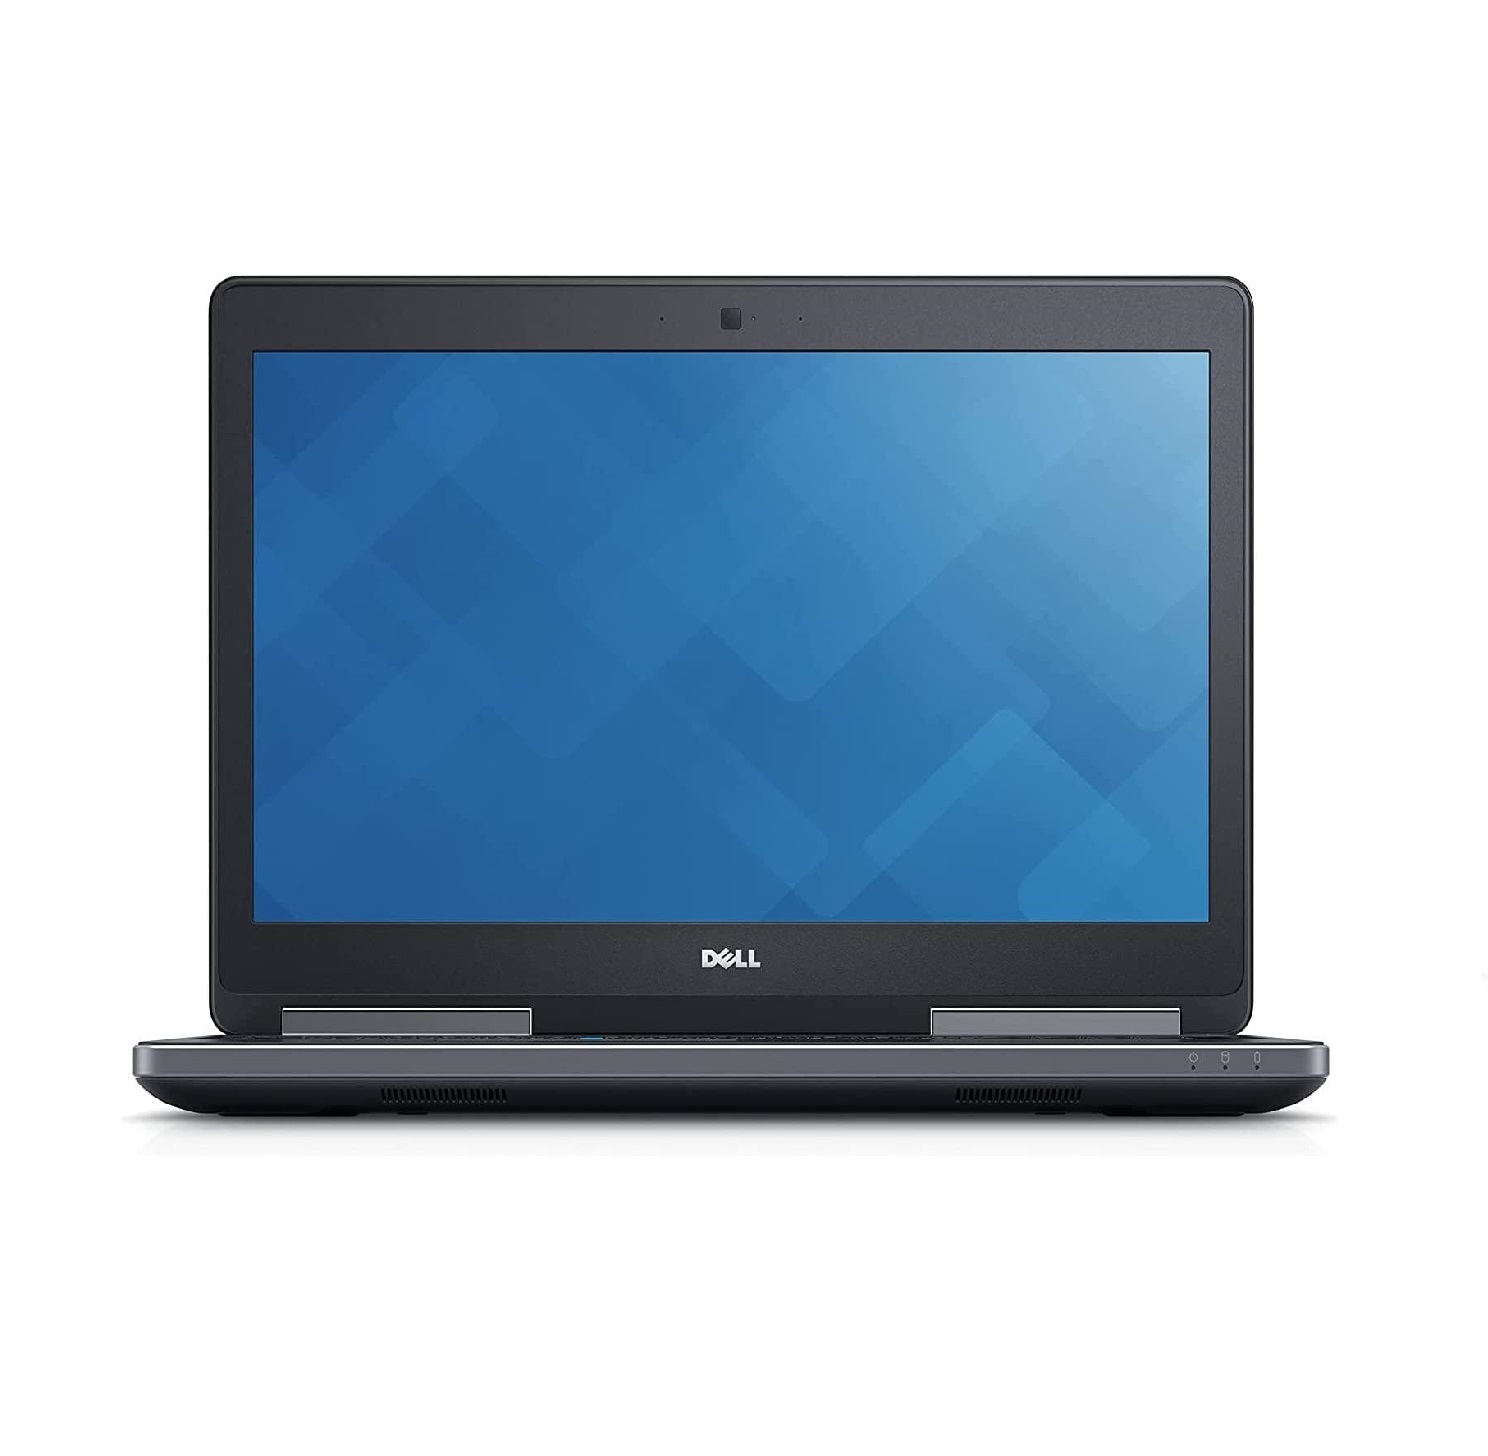 لپ تاپ دل Dell Precision 7520 تراشه i7 گرافیک quadro